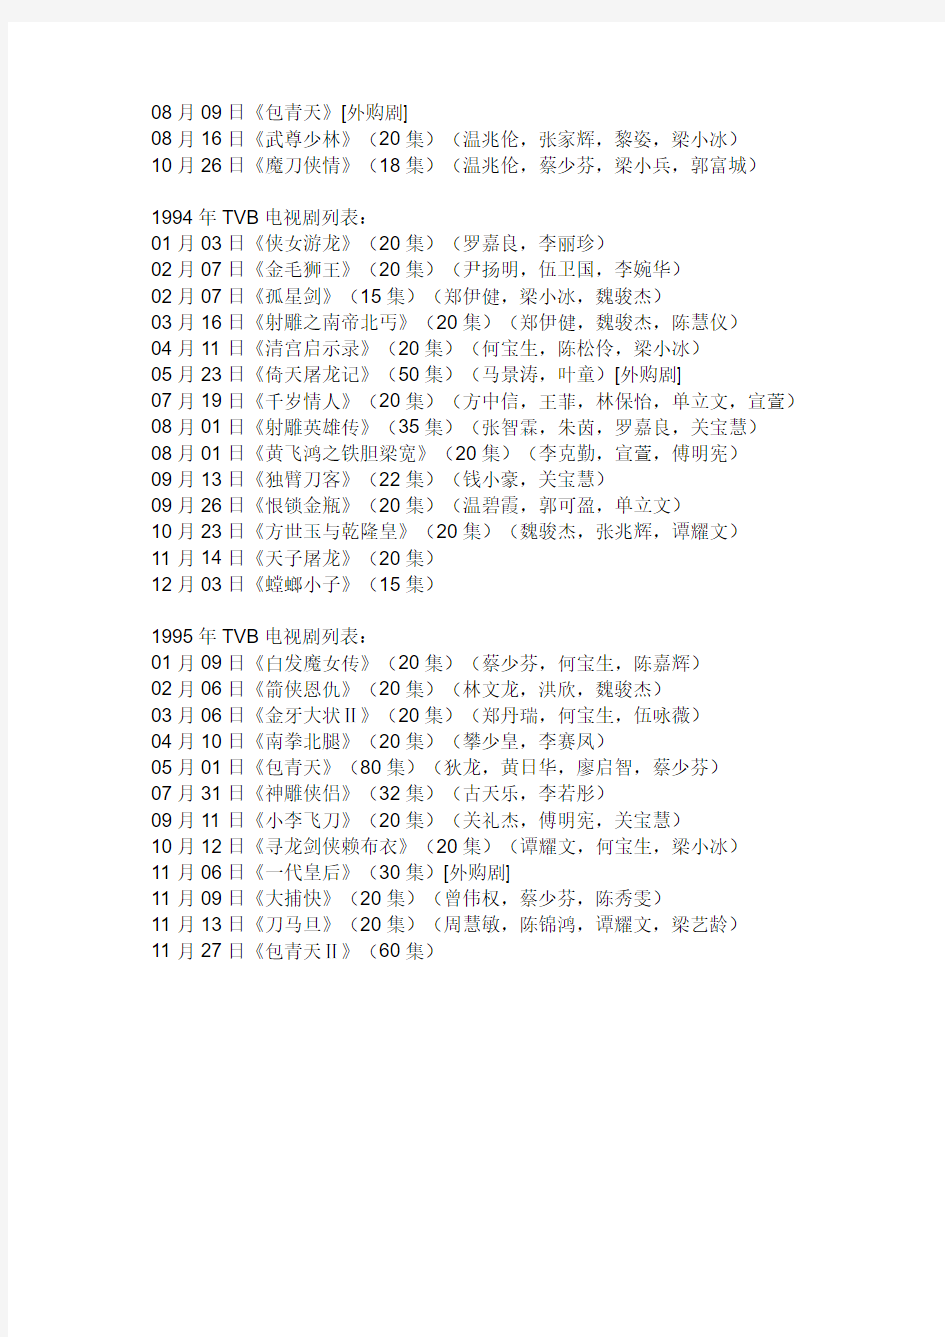 1989年TVB电视剧列表